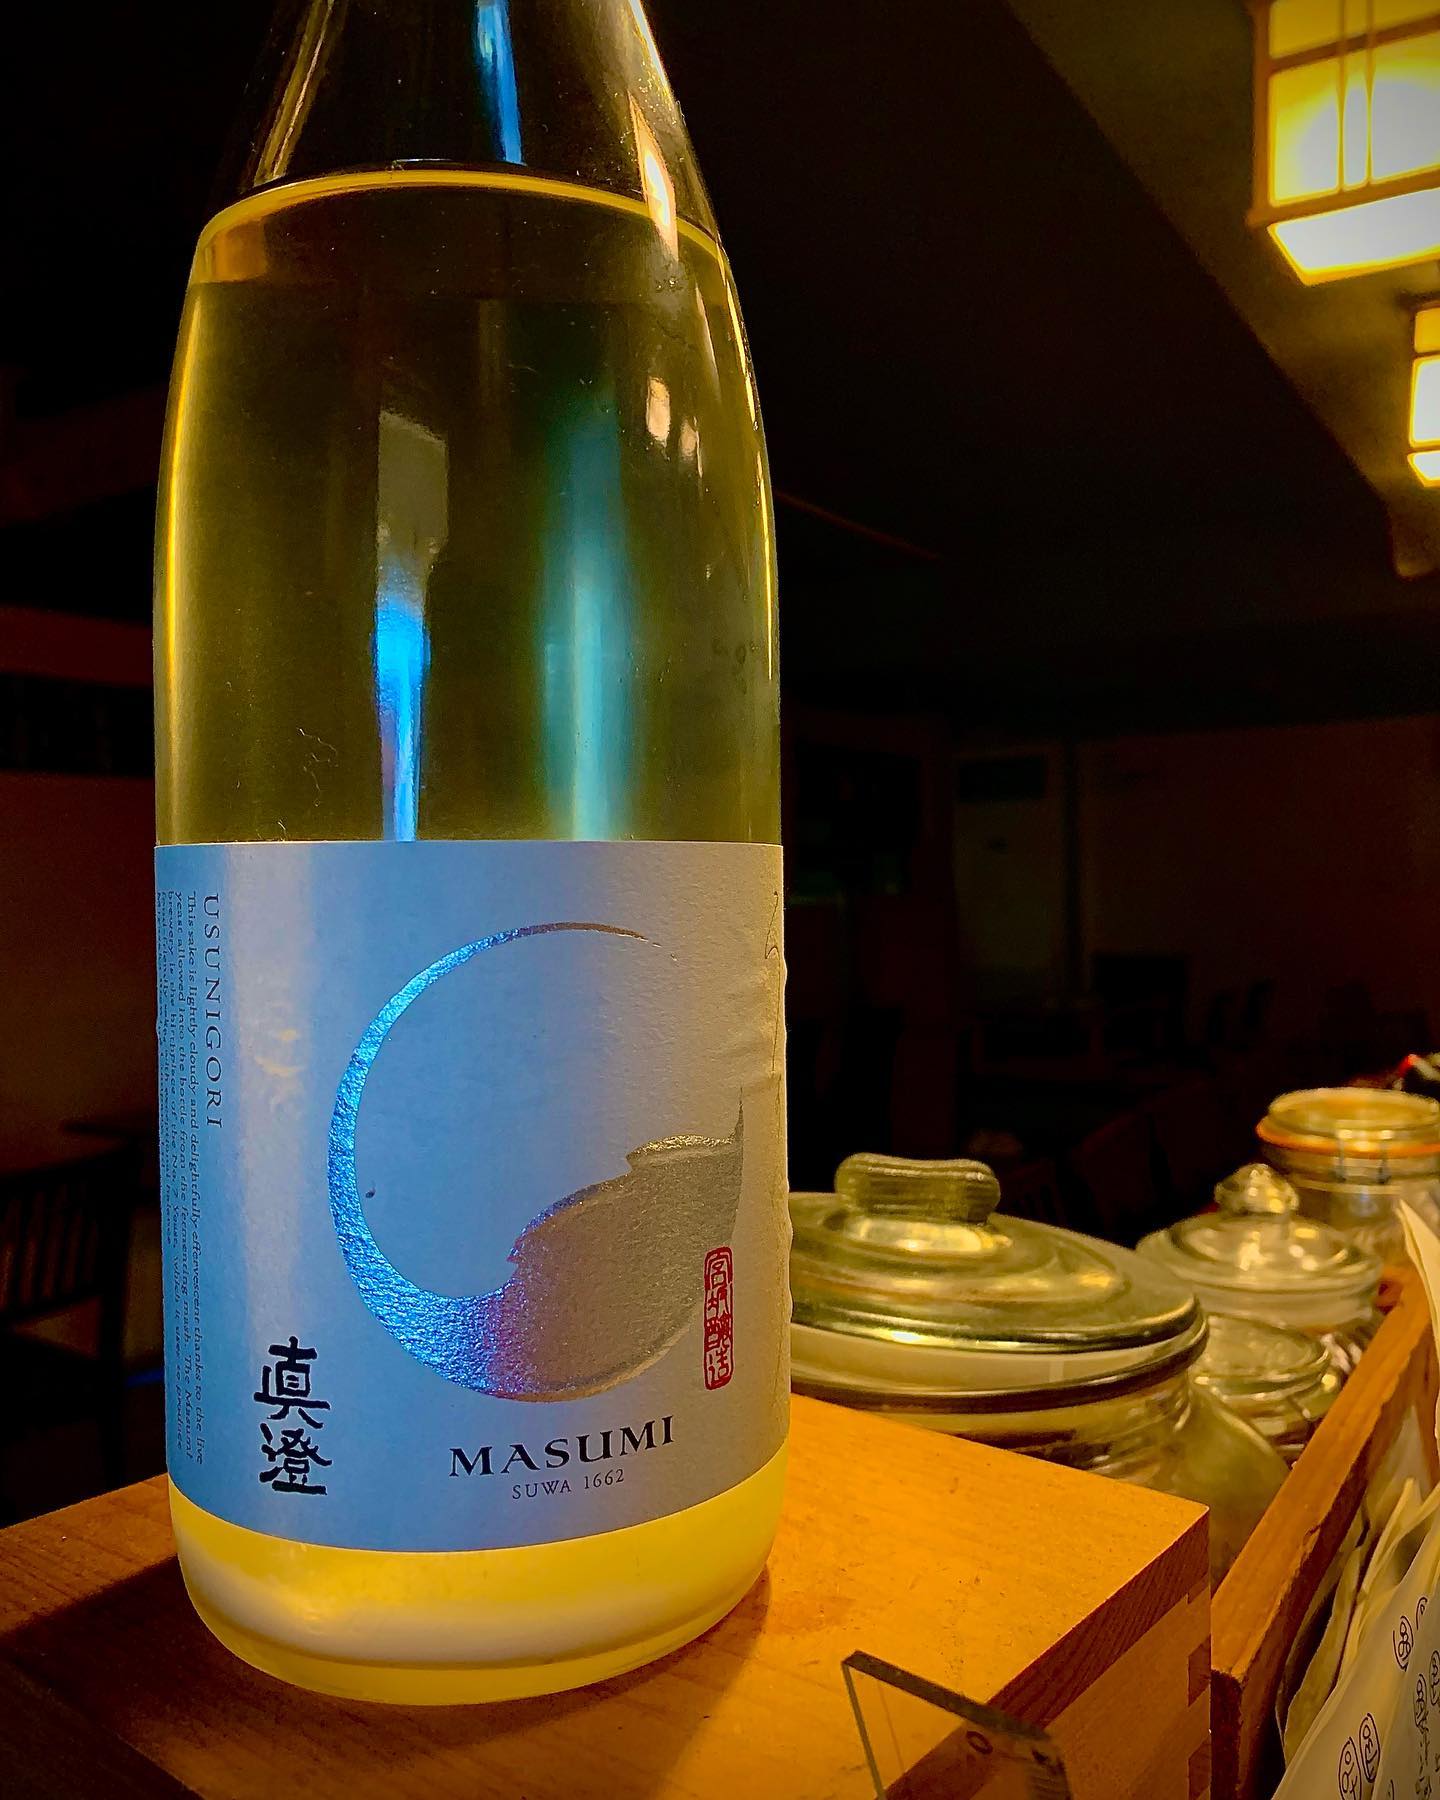 本日の日本酒はこちら
「真澄」
今回の真澄はまだまだ発酵が進んでます。
開けた時のポンッにはびっくりでした️
少しにごってる真澄この機会にお試しあれ
 # 日本酒 #